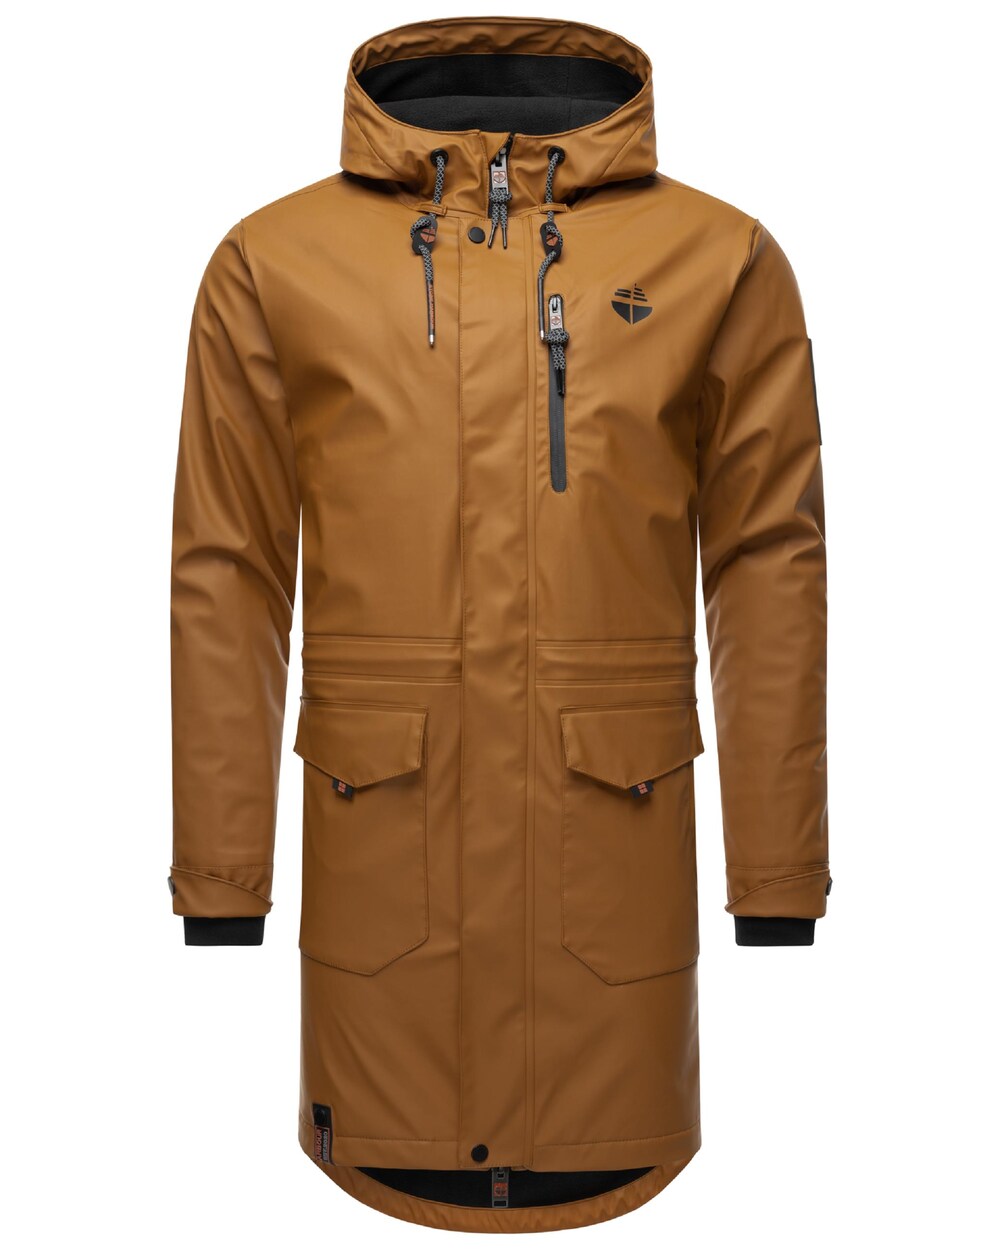 Межсезонное пальто STONE HARBOUR Verdaan, коричневый/светло-коричневый